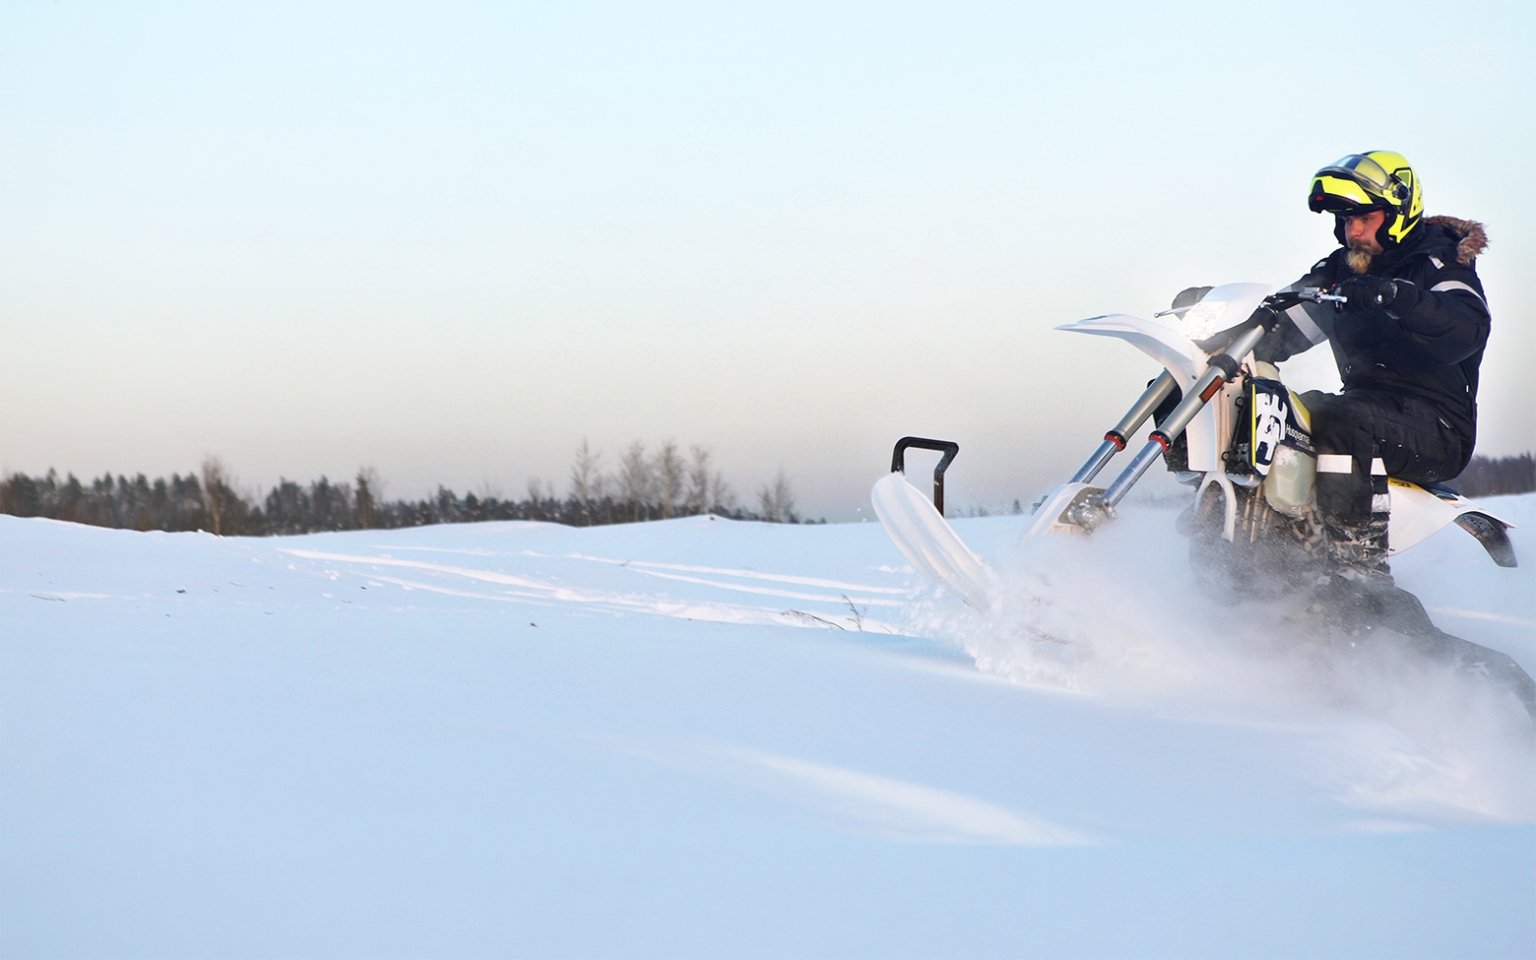 Husqvarna Snowbike не испытывает никаких проблем ни в глубоком снегу, ни на заснеженном склоне